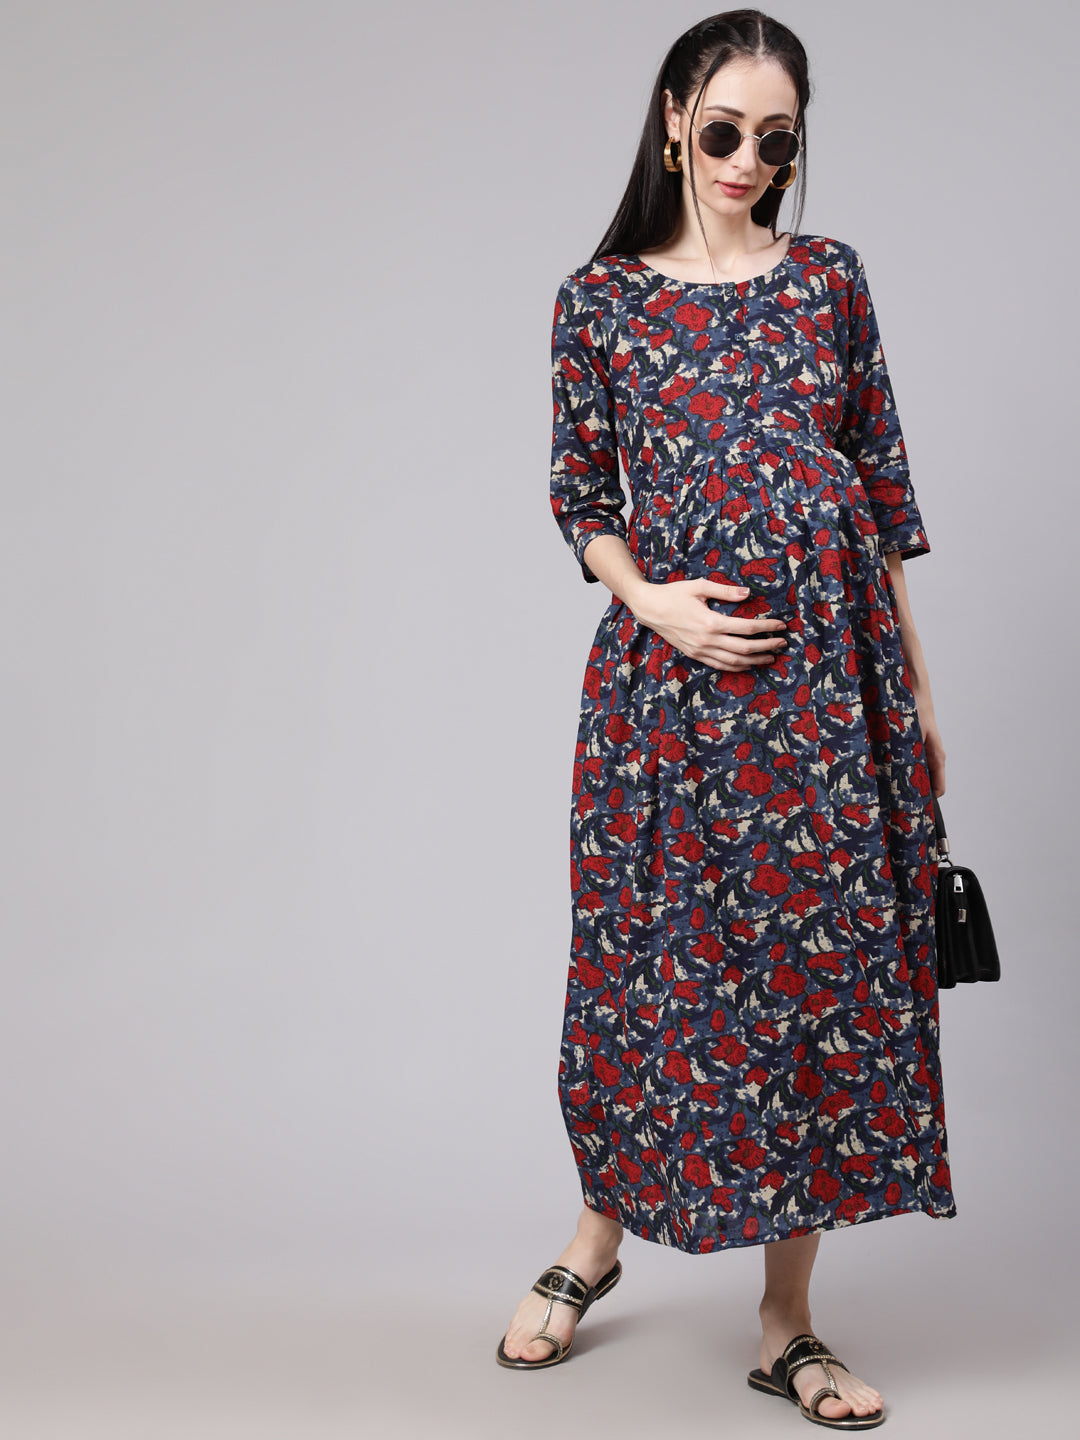 Women's Multi Ethnic Printed Flared Maternity Dress - Nayo Clothing